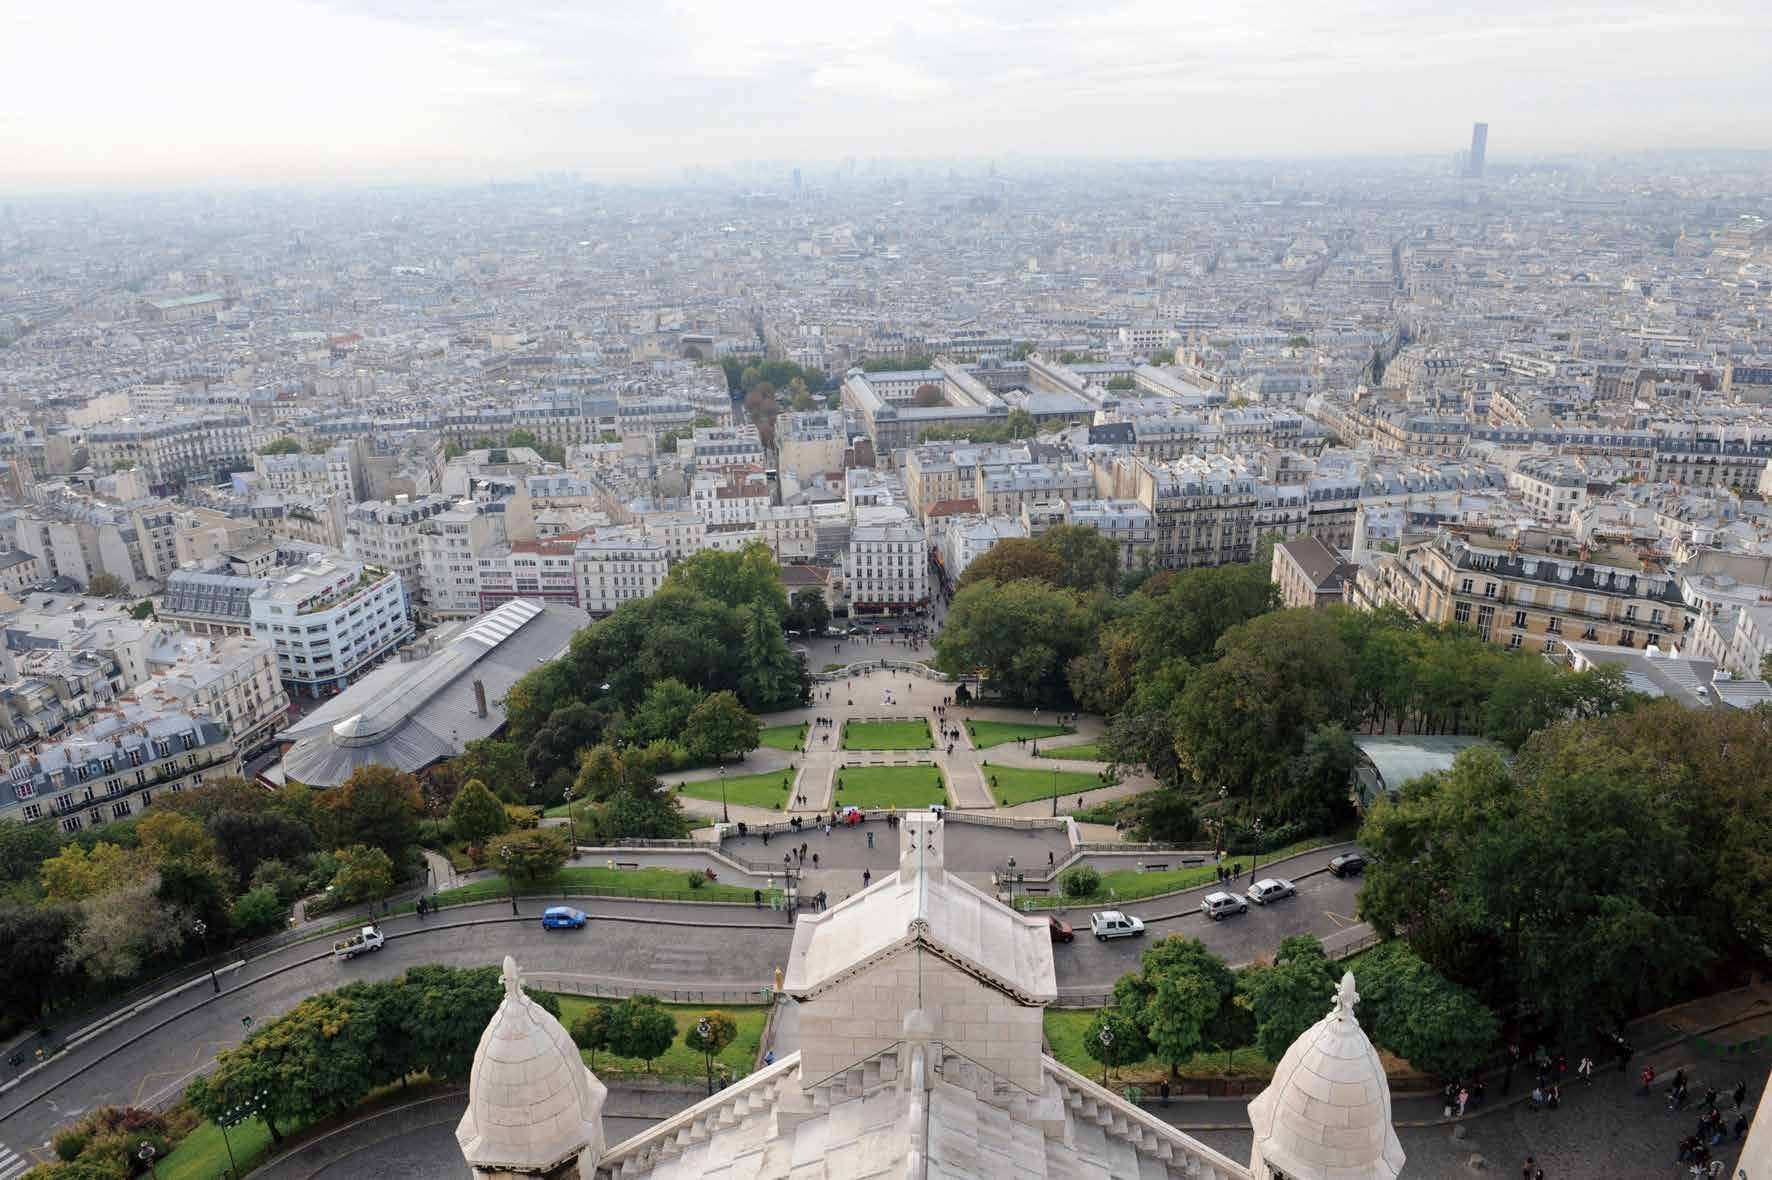 サクレ・クール聖堂から眺めるパリの風景。歴史を感じさせる石造りの町並み、その中から顔をのぞかせる高層ビル。
ここからは、「歴史あるパリ」と「進化を続けるパリ」の両方が手に取るようにわかる